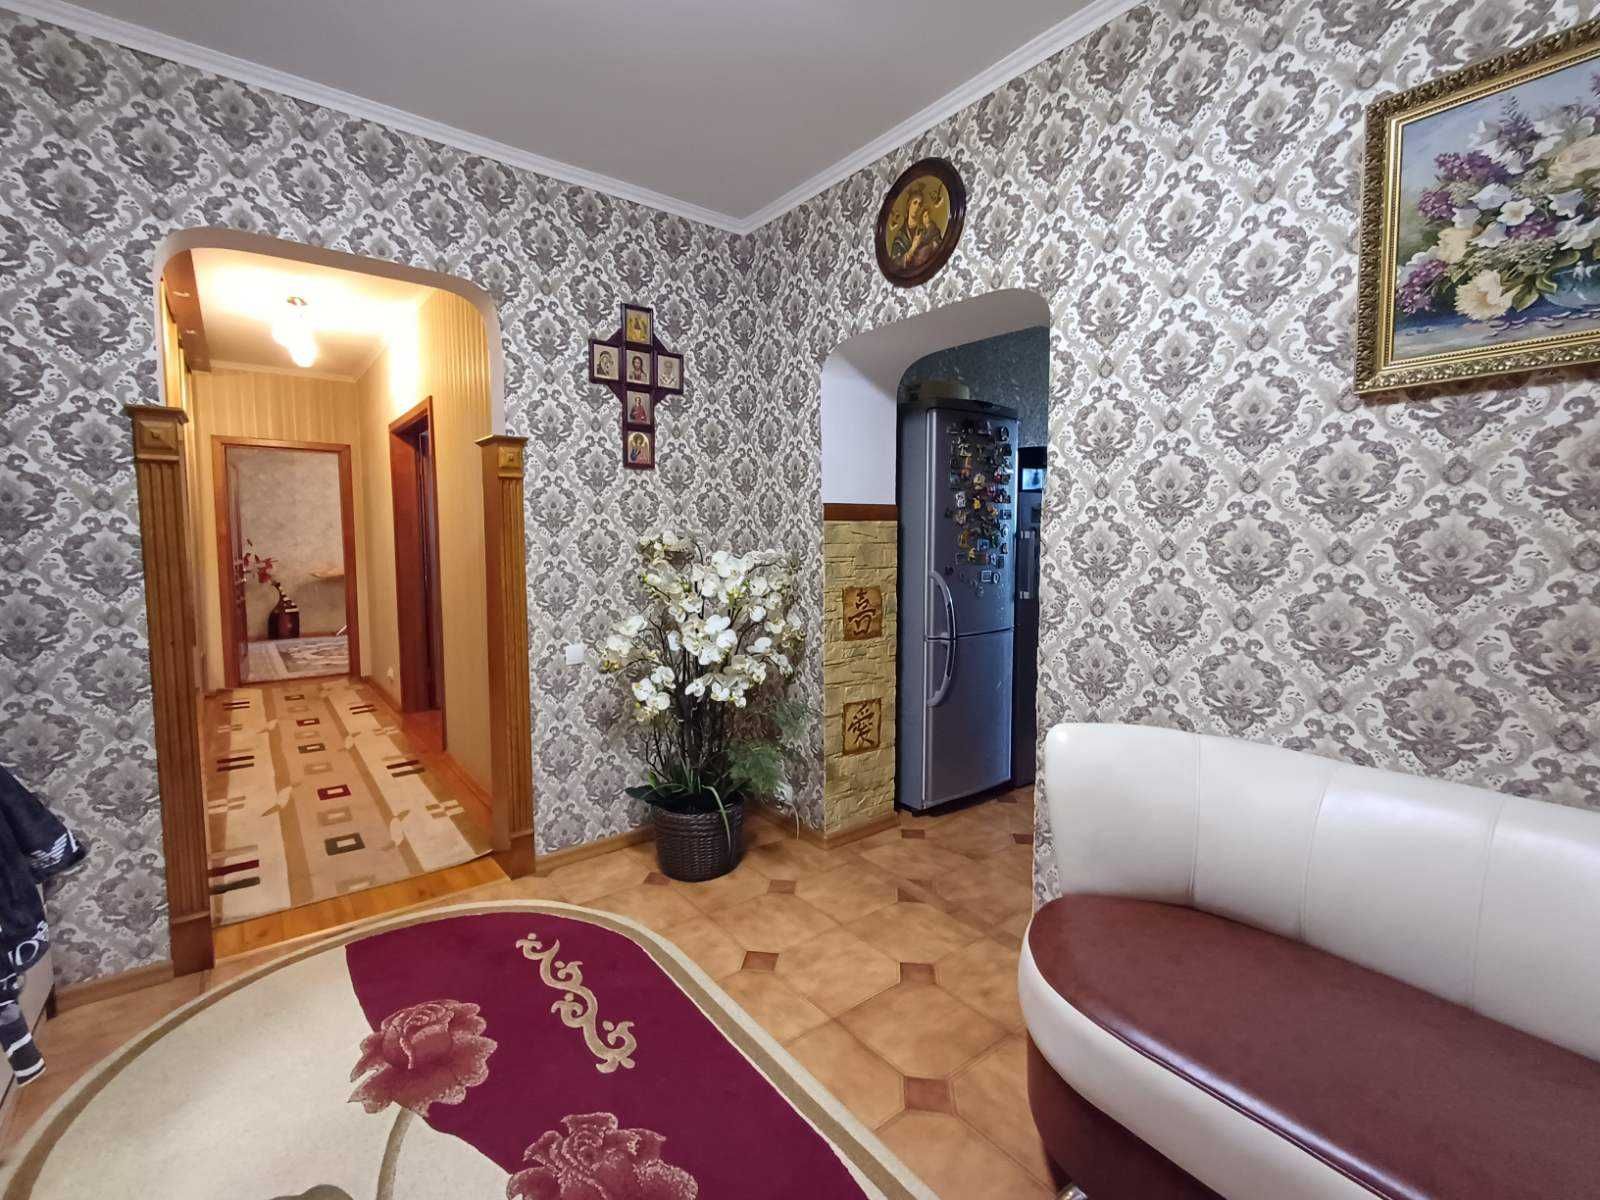 Продаж 2х кімнатної квартири в м. Васильків